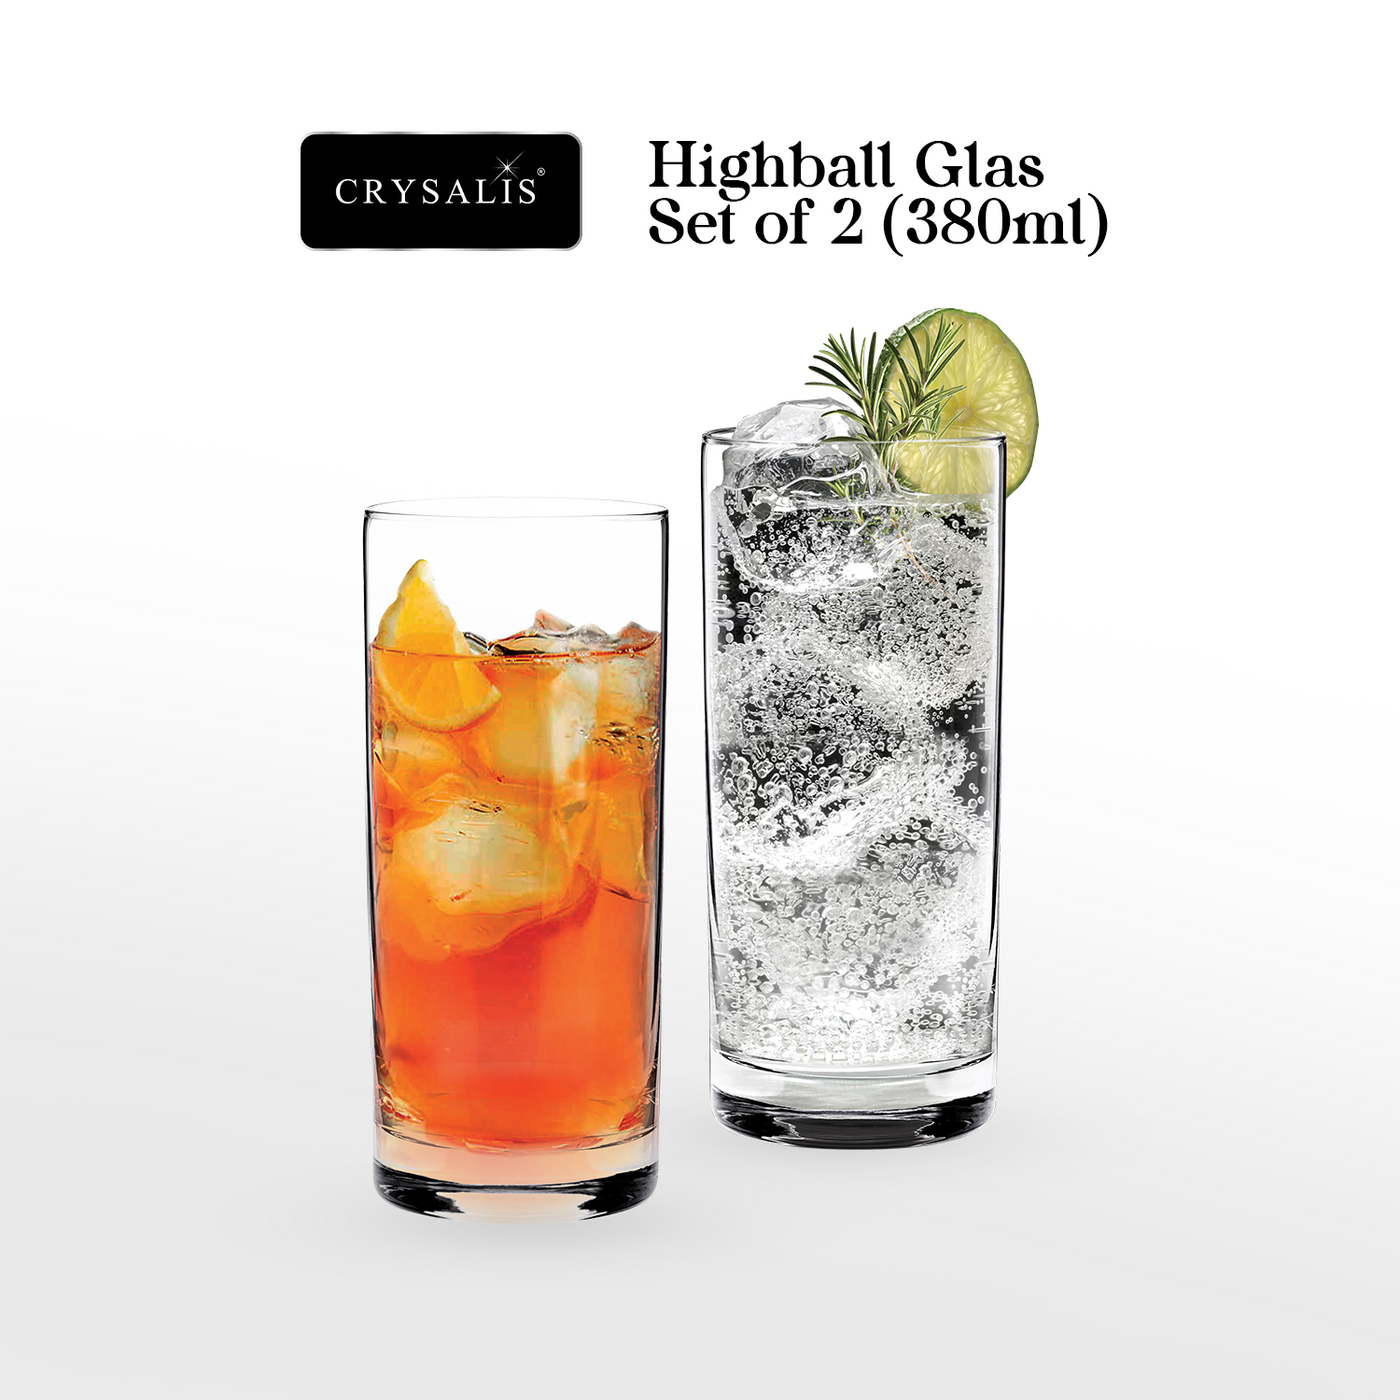 CRYSALIS Highball Glass Set of 2